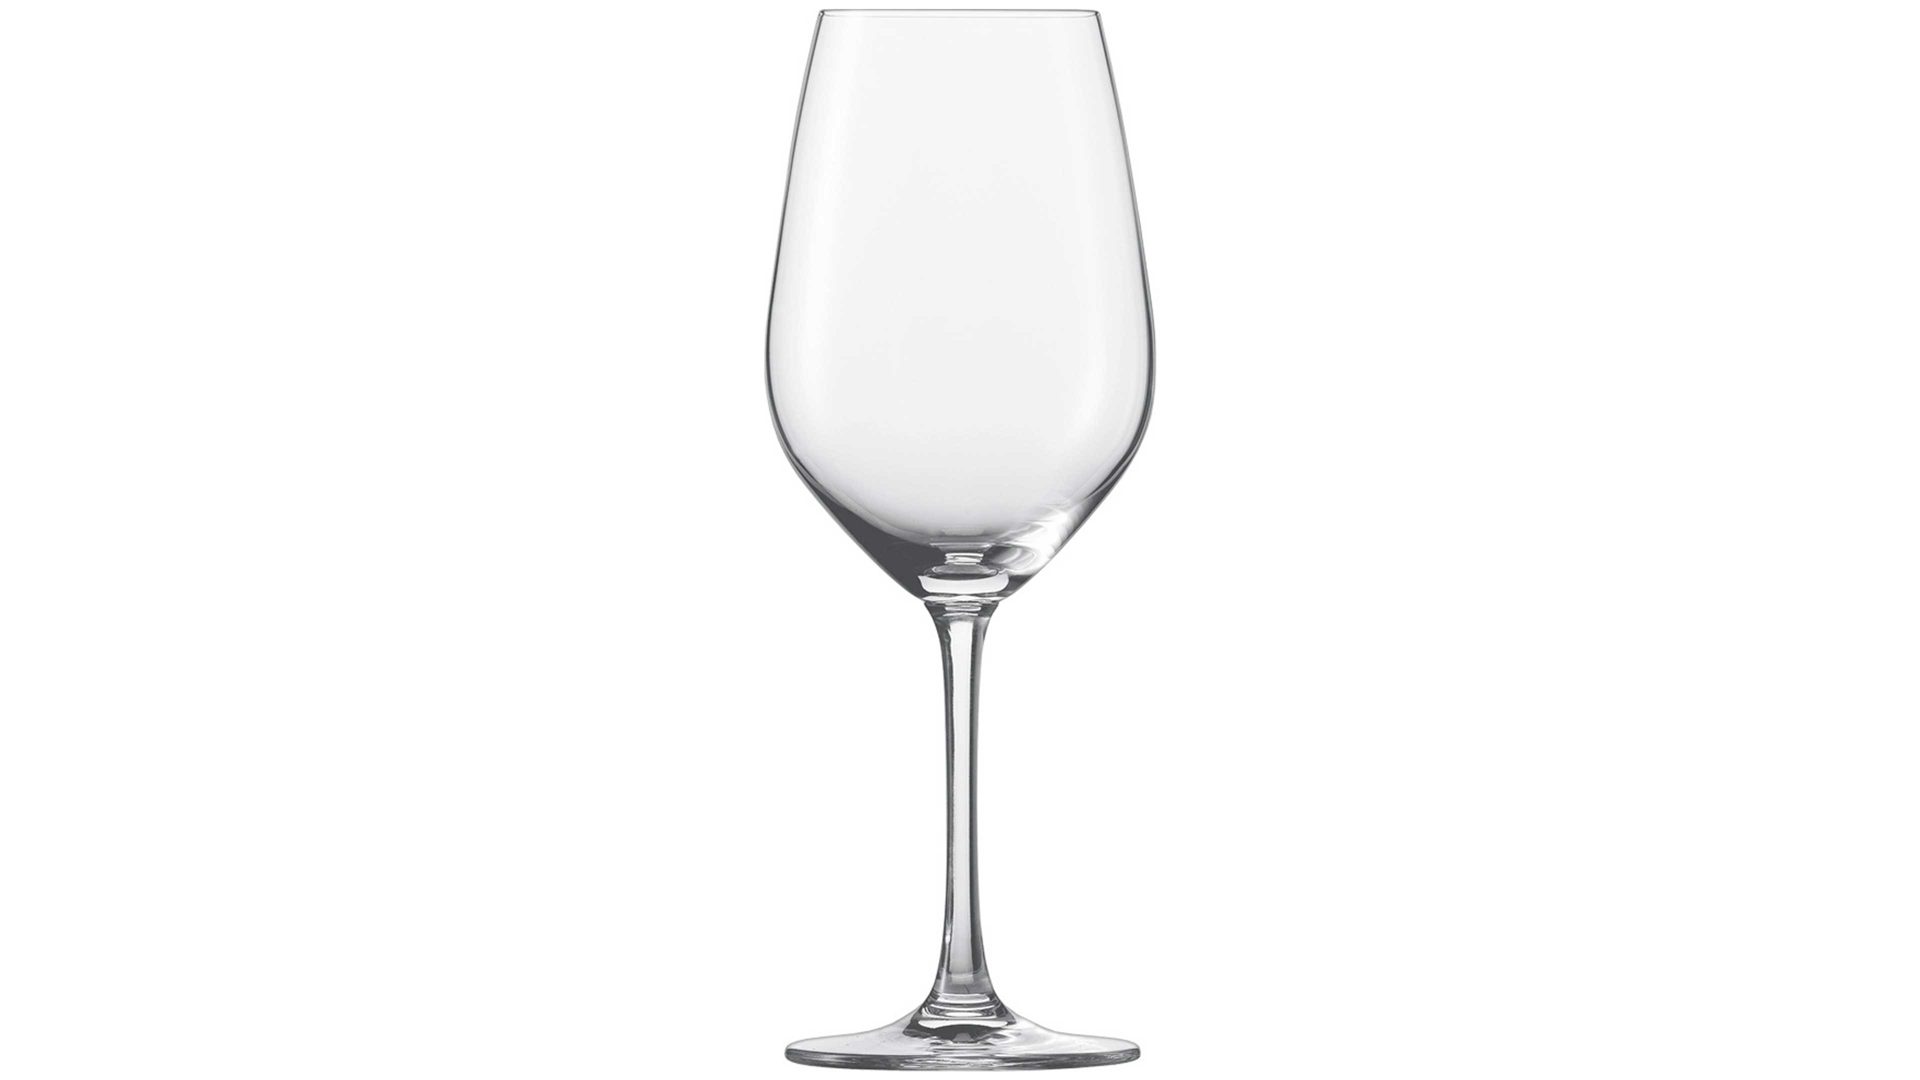 Rotweinglas Schott zwiesel aus Glas in Transparent SCHOTT ZWIESEL Burgunderglas Forte Tritan®-Kristallglas – ca. 420 ml, 6-teilig